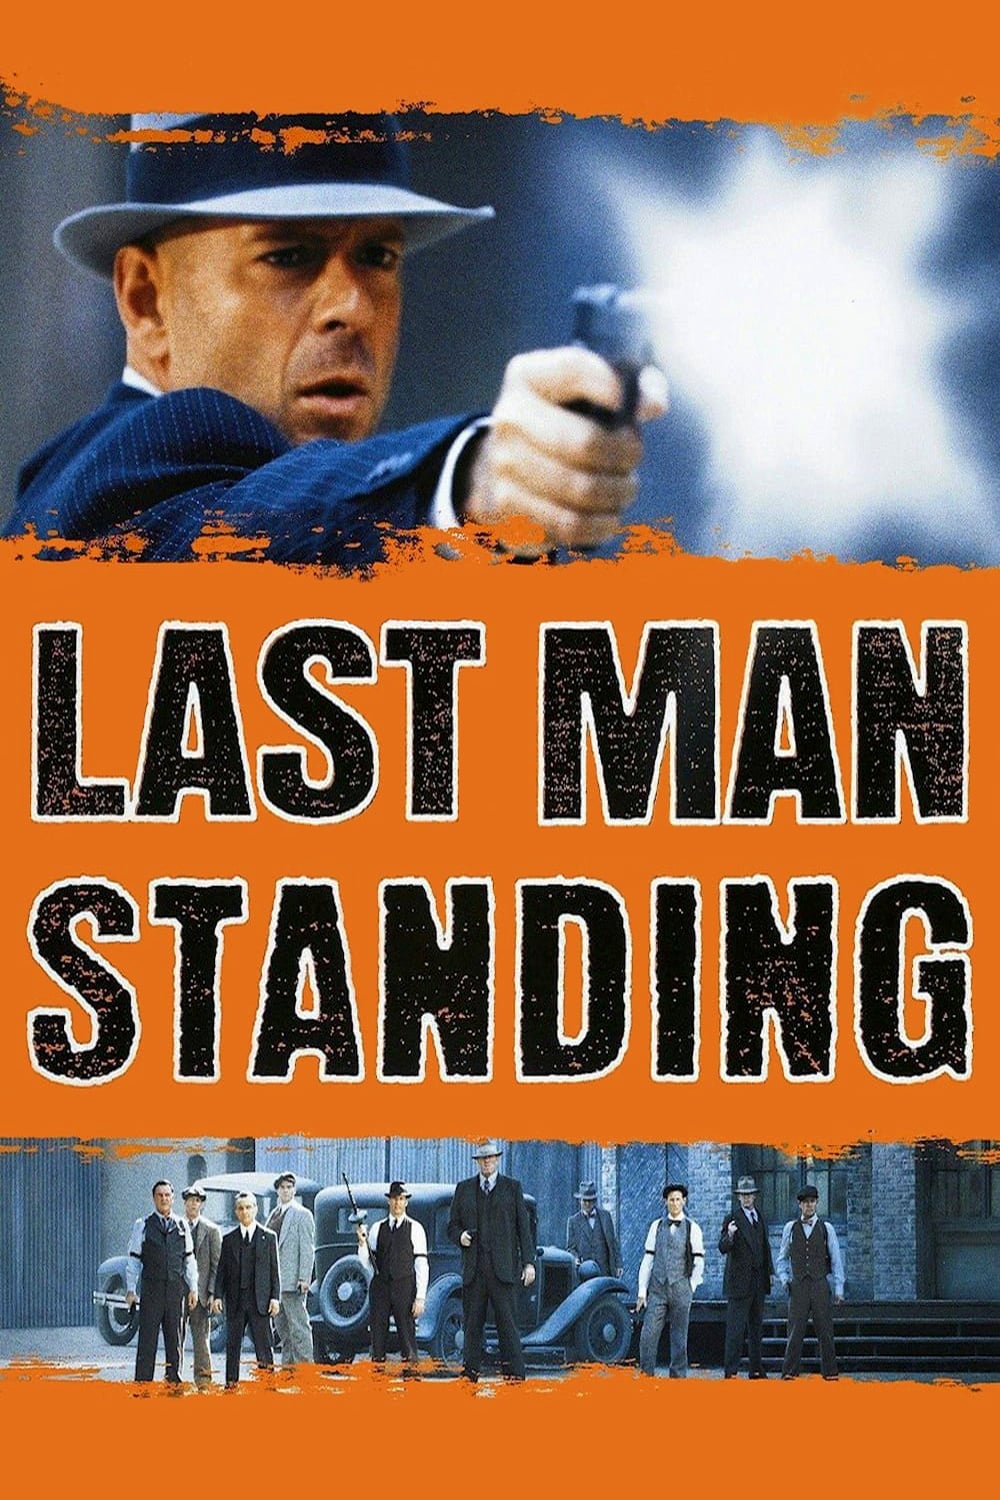 Tay Súng Cuối Cùng - Last Man Standing (1996)